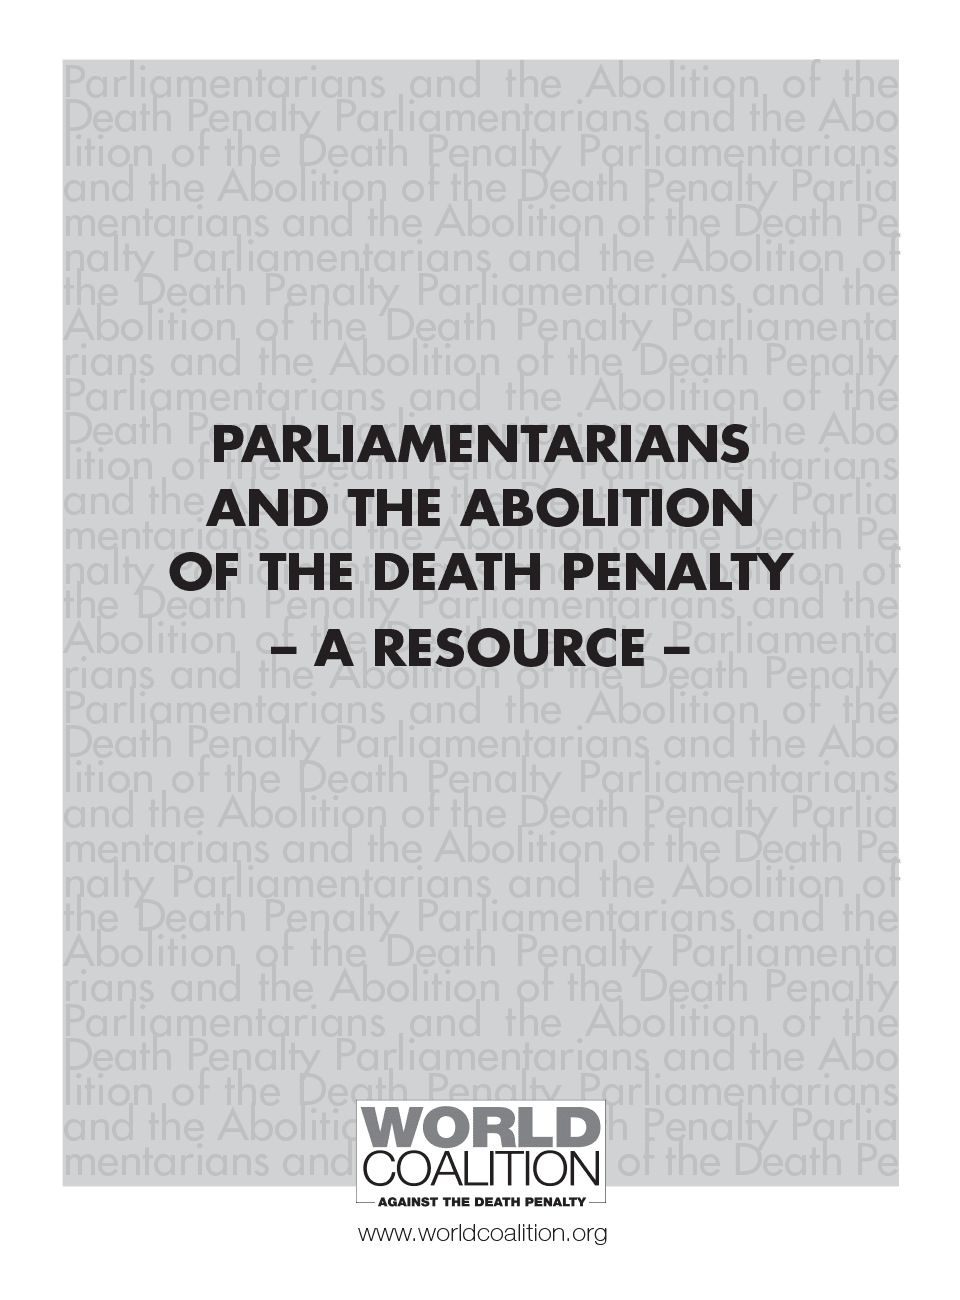 Guía Parlamentaria sobre la Abolición de la Pena de Muerte